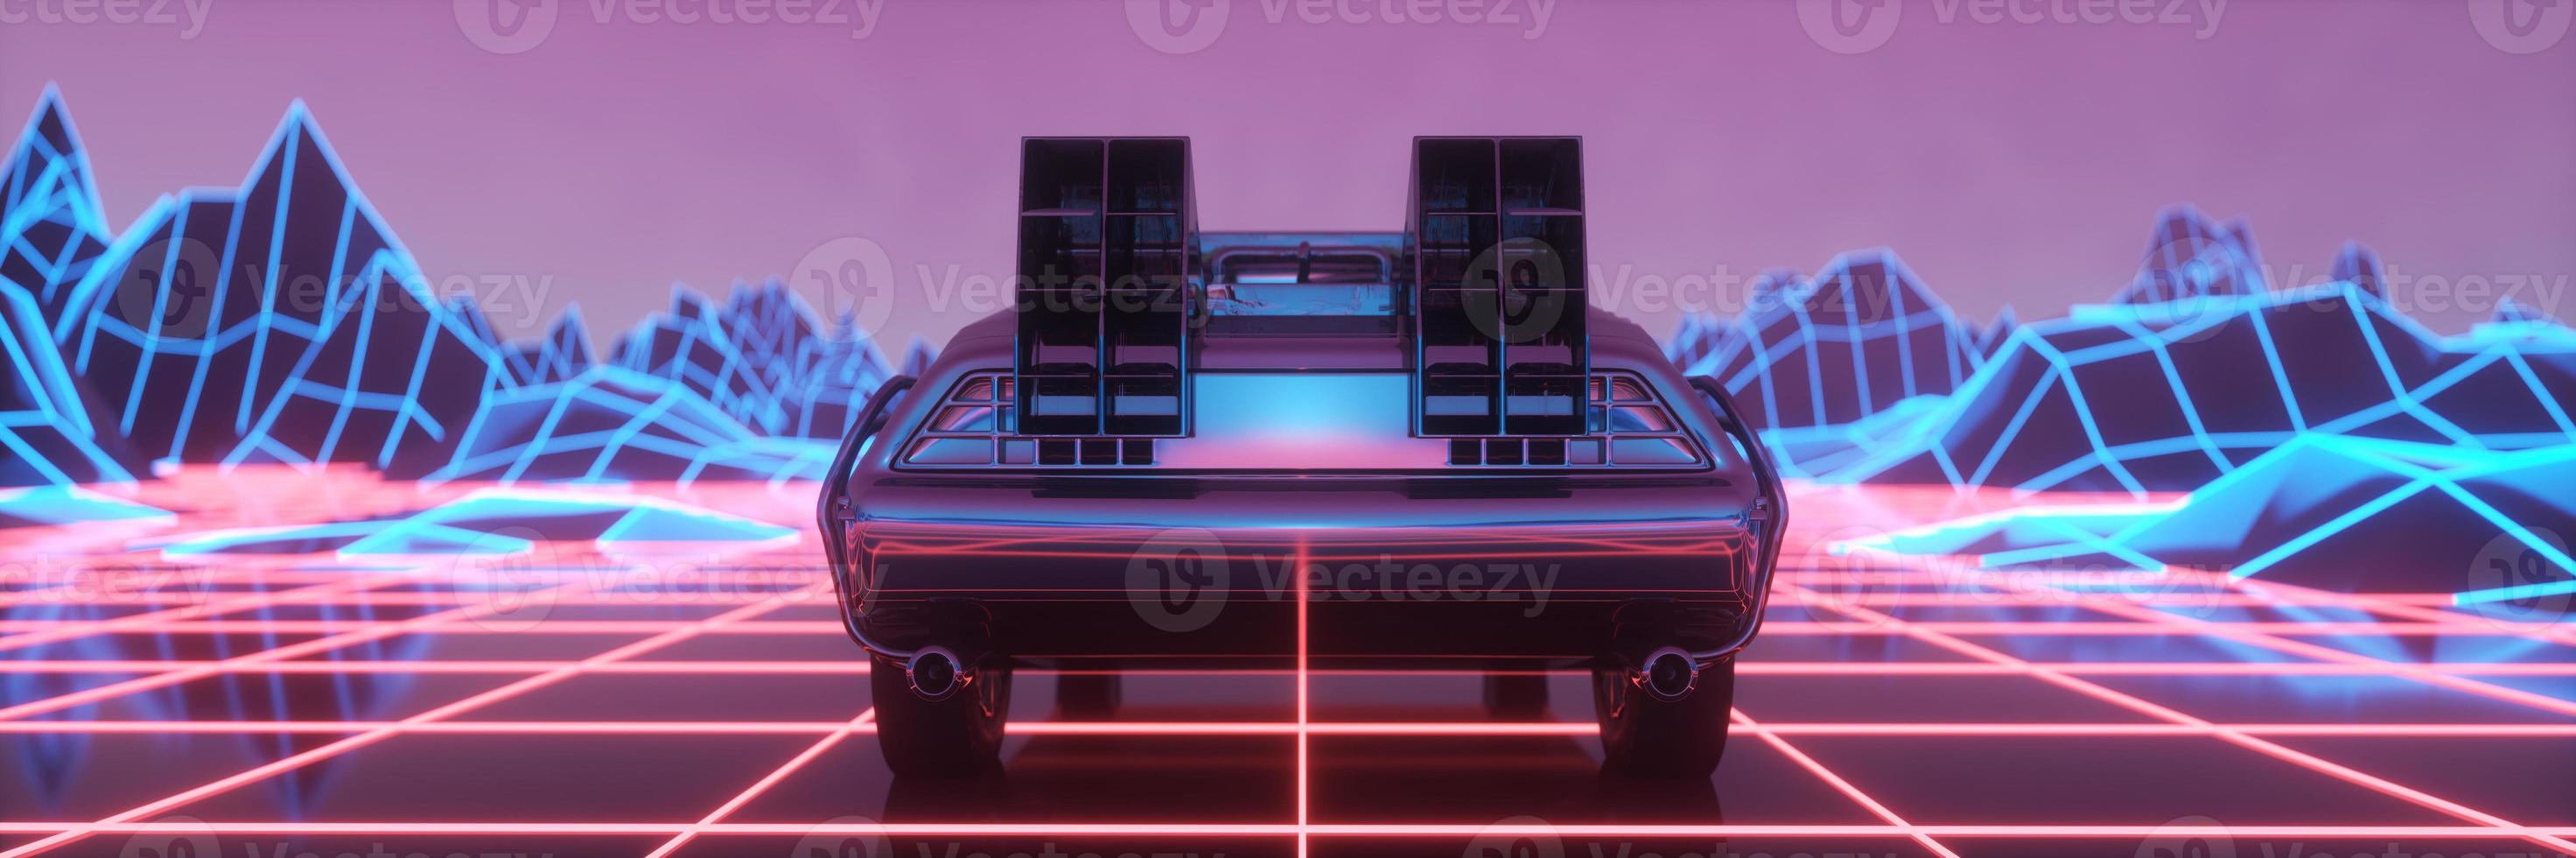 Xe ô tô định dạng neon cyberpunk: Xe đua định dạng neon cyberpunk đầy phóng khoáng và thú vị. Chúng tôi sẽ đưa bạn đến với một thế giới đầy màu sắc và sự kỳ lạ. Hãy thử sức với những trò chơi lái xe mới lạ và đầy thách thức.